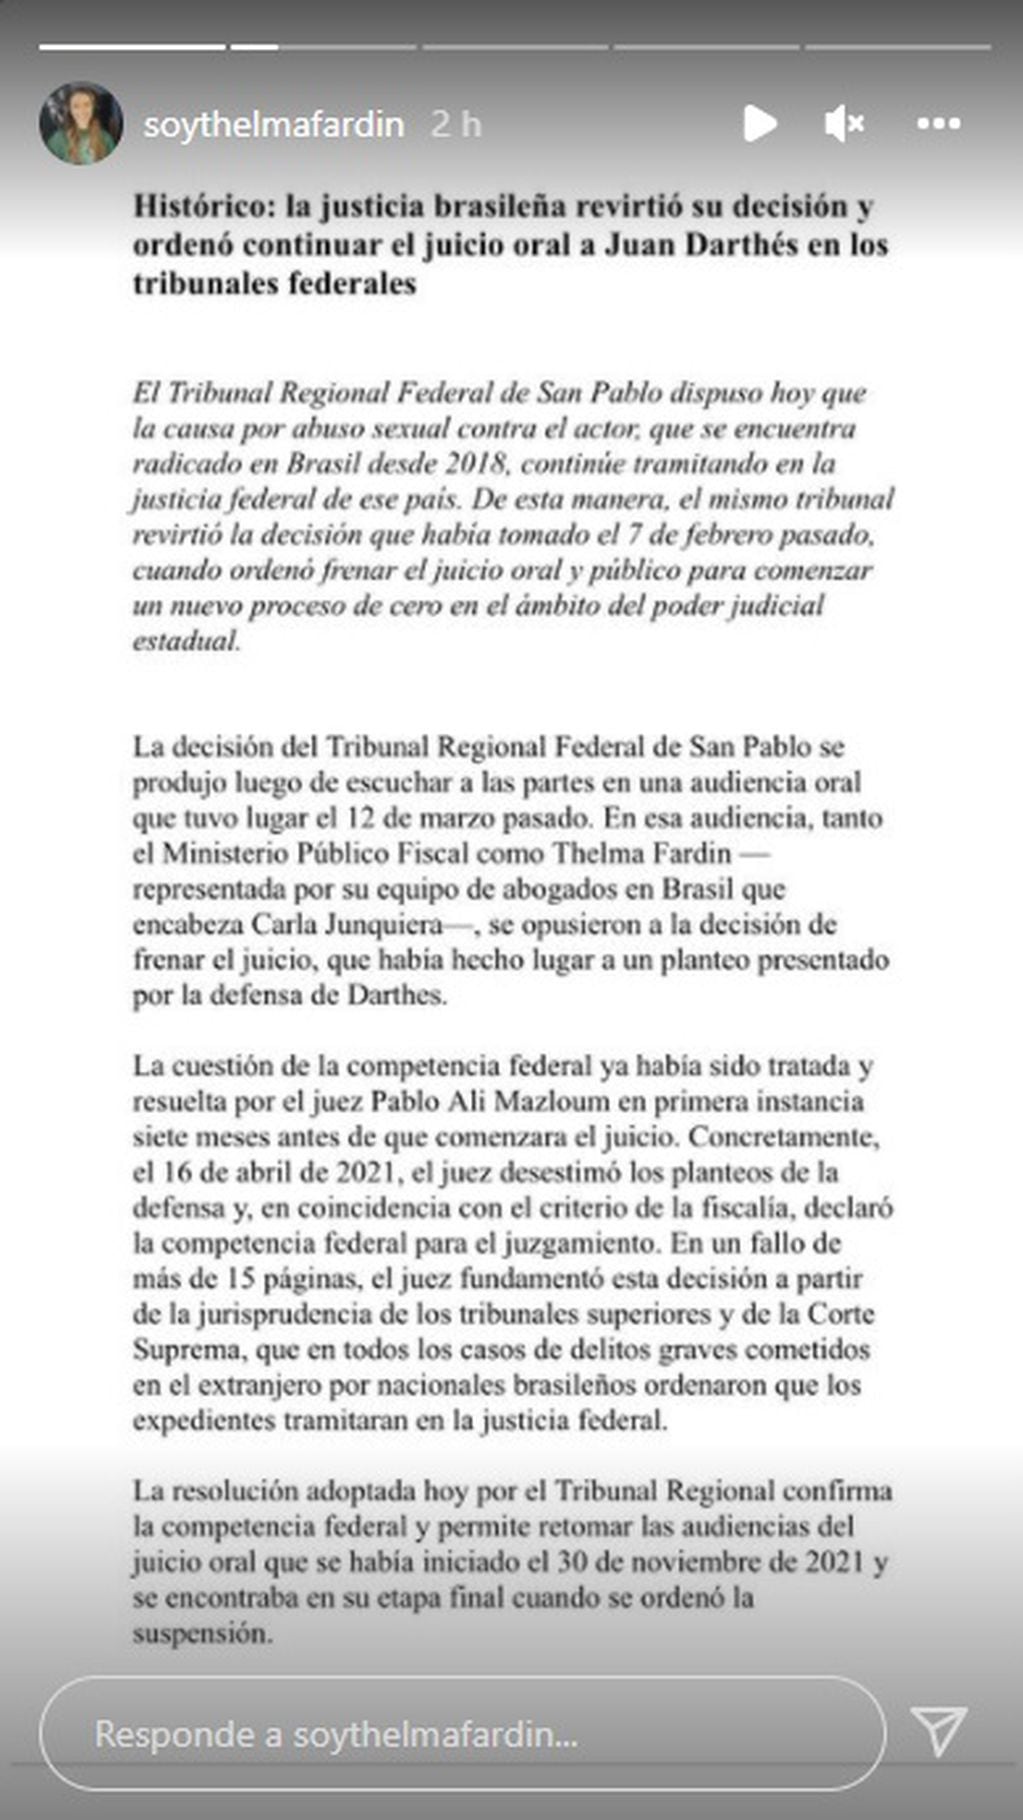 El comunicado del Tribunal Regional Federal de San Pablo